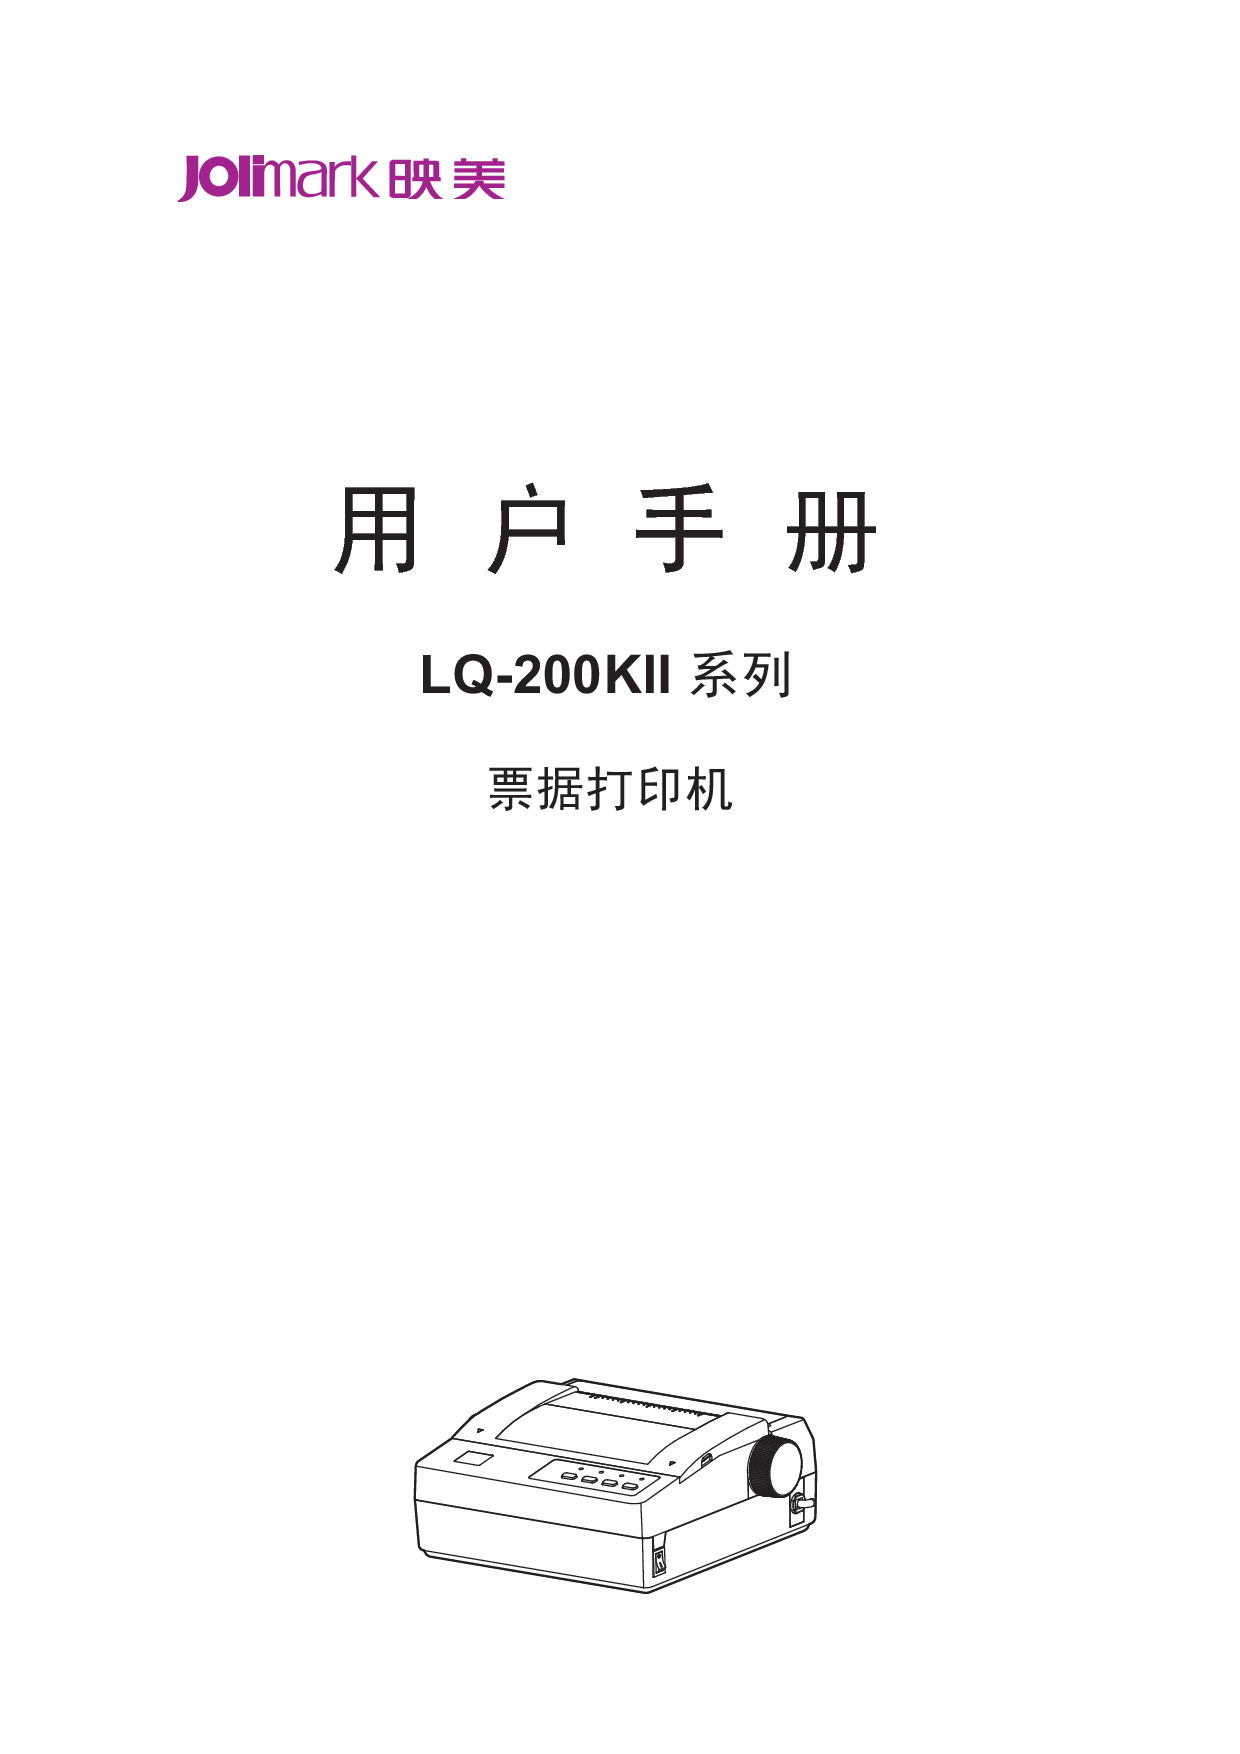 映美 Jolimark LQ-200KII 第二版 用户手册 封面